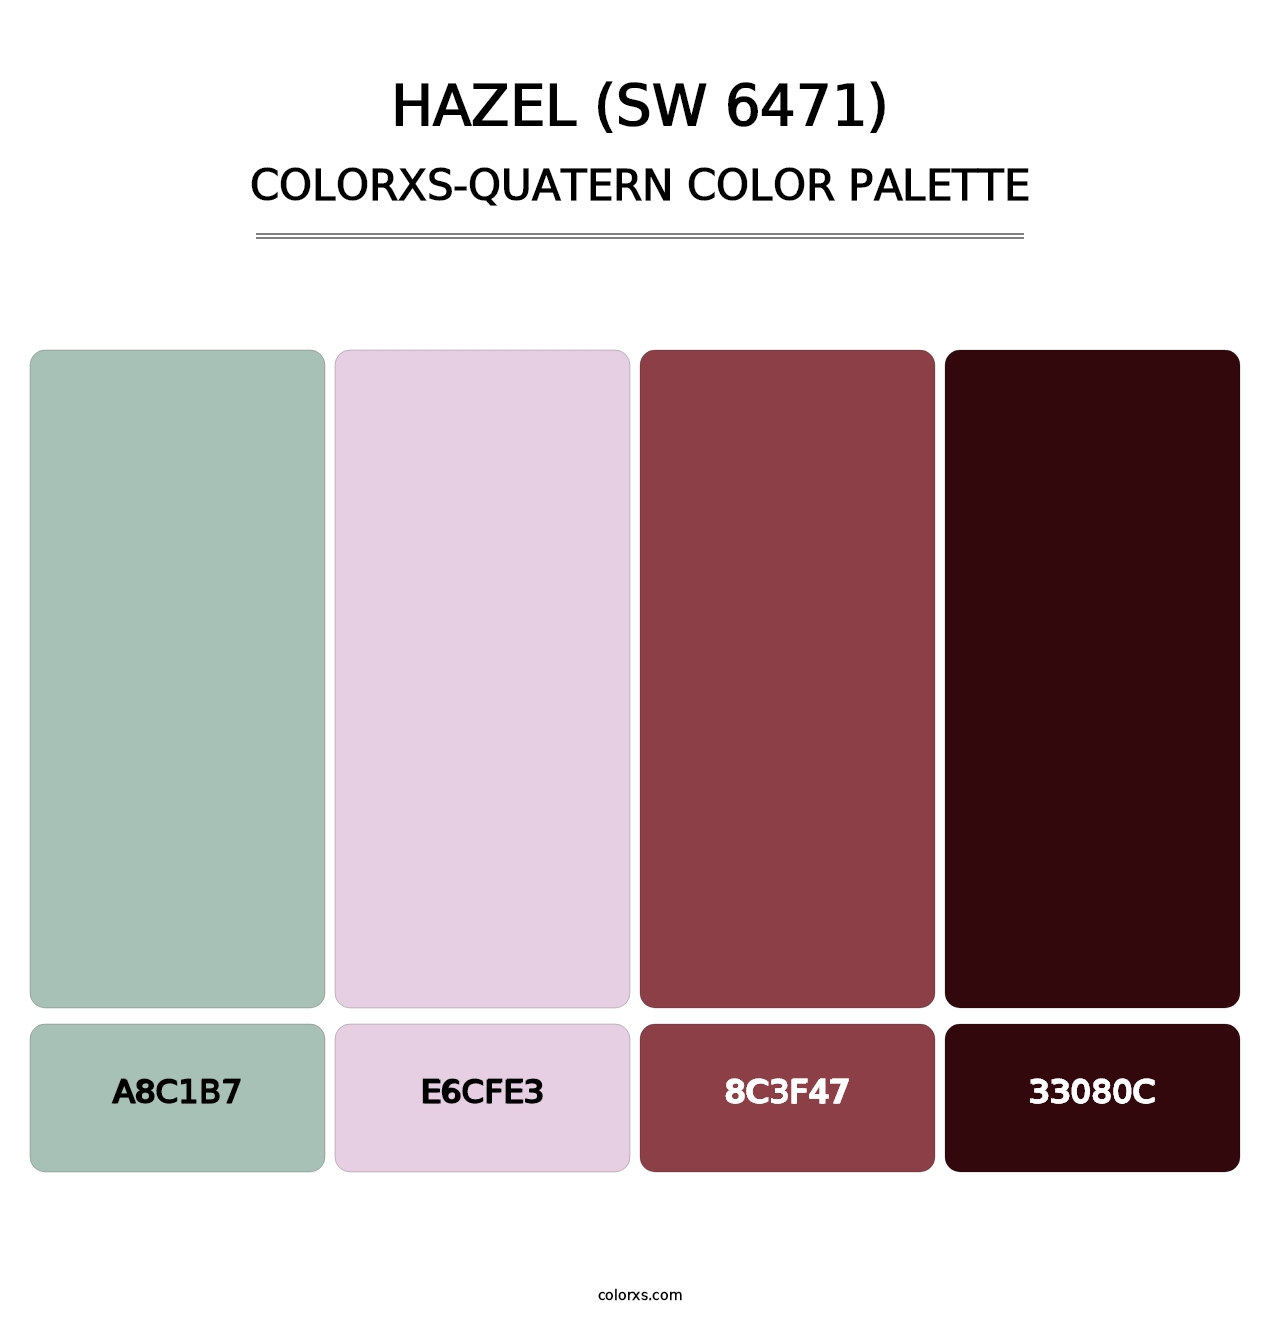 Hazel (SW 6471) - Colorxs Quatern Palette